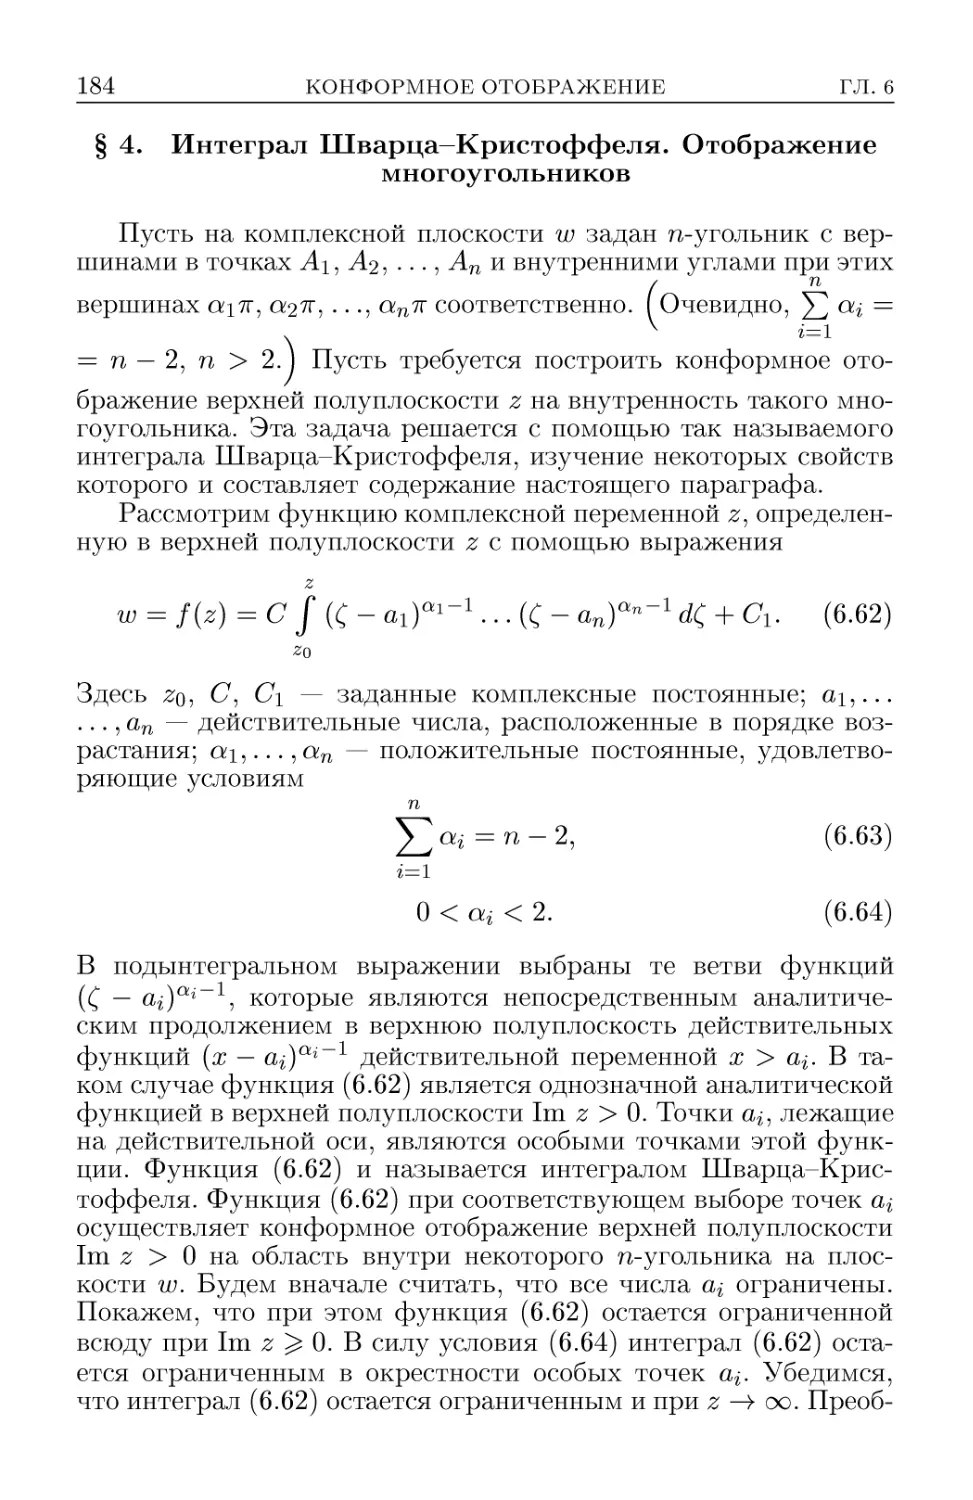 § 4. Интеграл Шварца-Кристоффеля. Отображение многоугольников